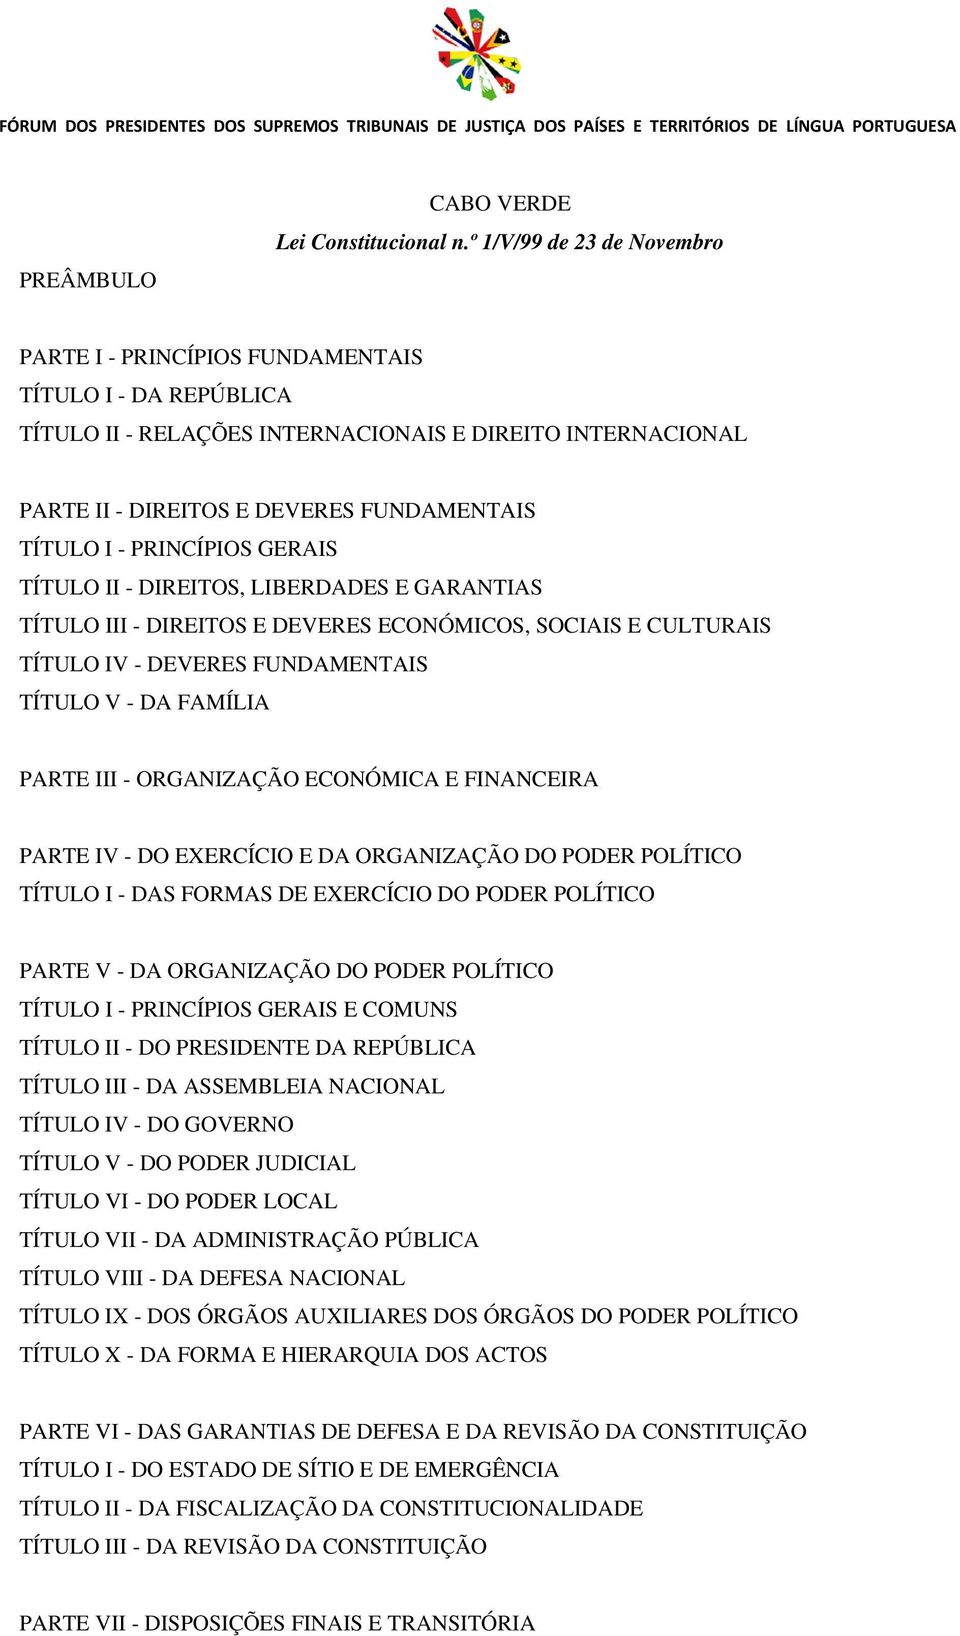 PRINCÍPIOS GERAIS TÍTULO II - DIREITOS, LIBERDADES E GARANTIAS TÍTULO III - DIREITOS E DEVERES ECONÓMICOS, SOCIAIS E CULTURAIS TÍTULO IV - DEVERES FUNDAMENTAIS TÍTULO V - DA FAMÍLIA PARTE III -